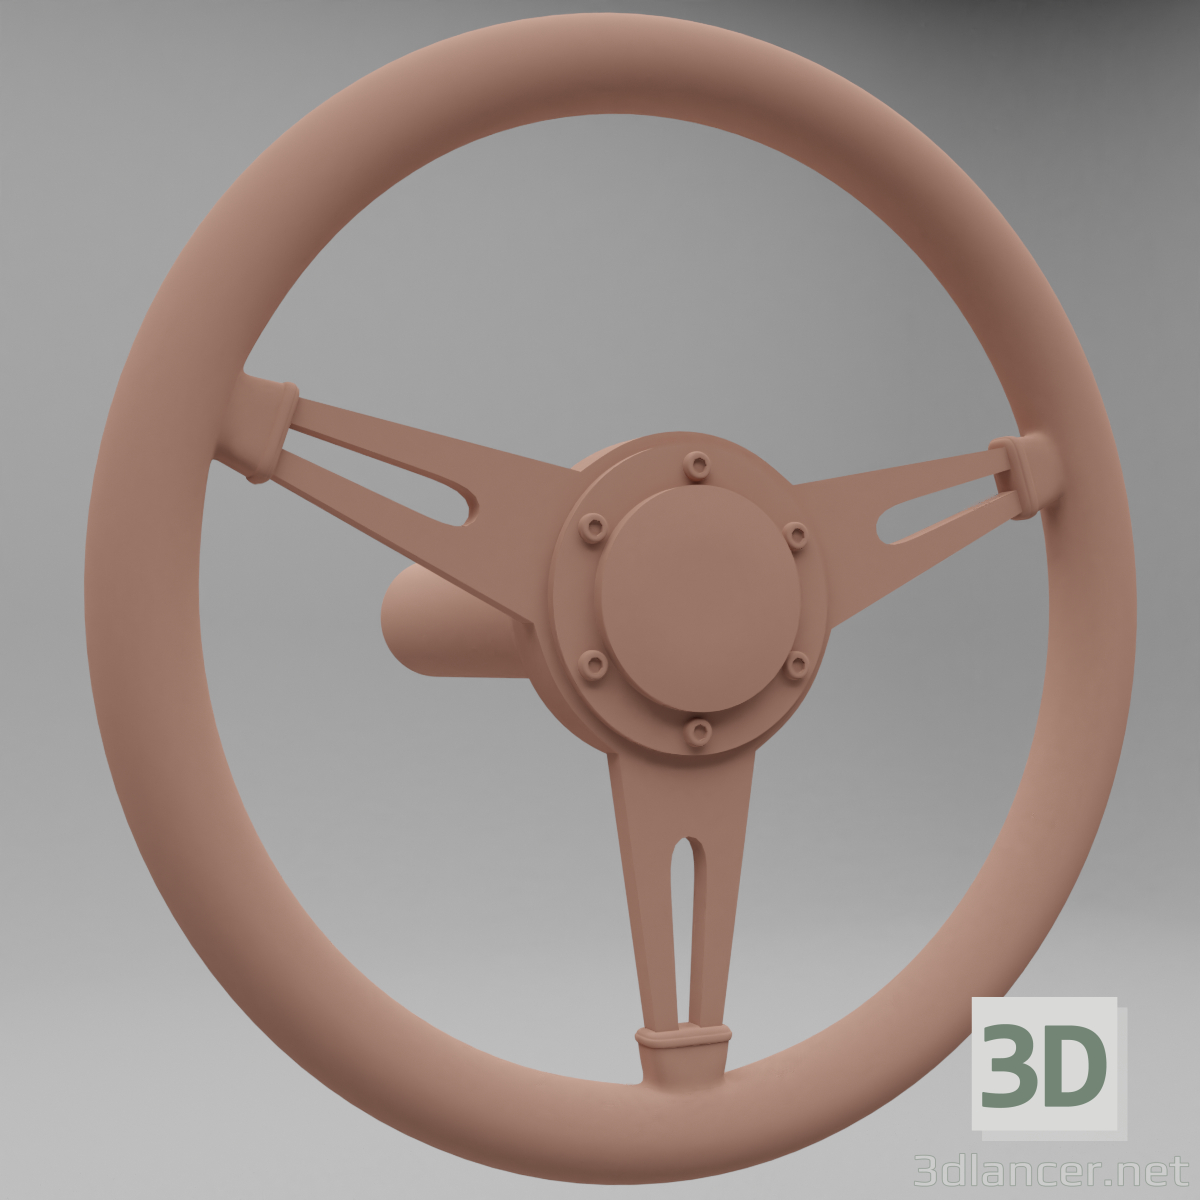 3d sports car steering wheel model buy - render